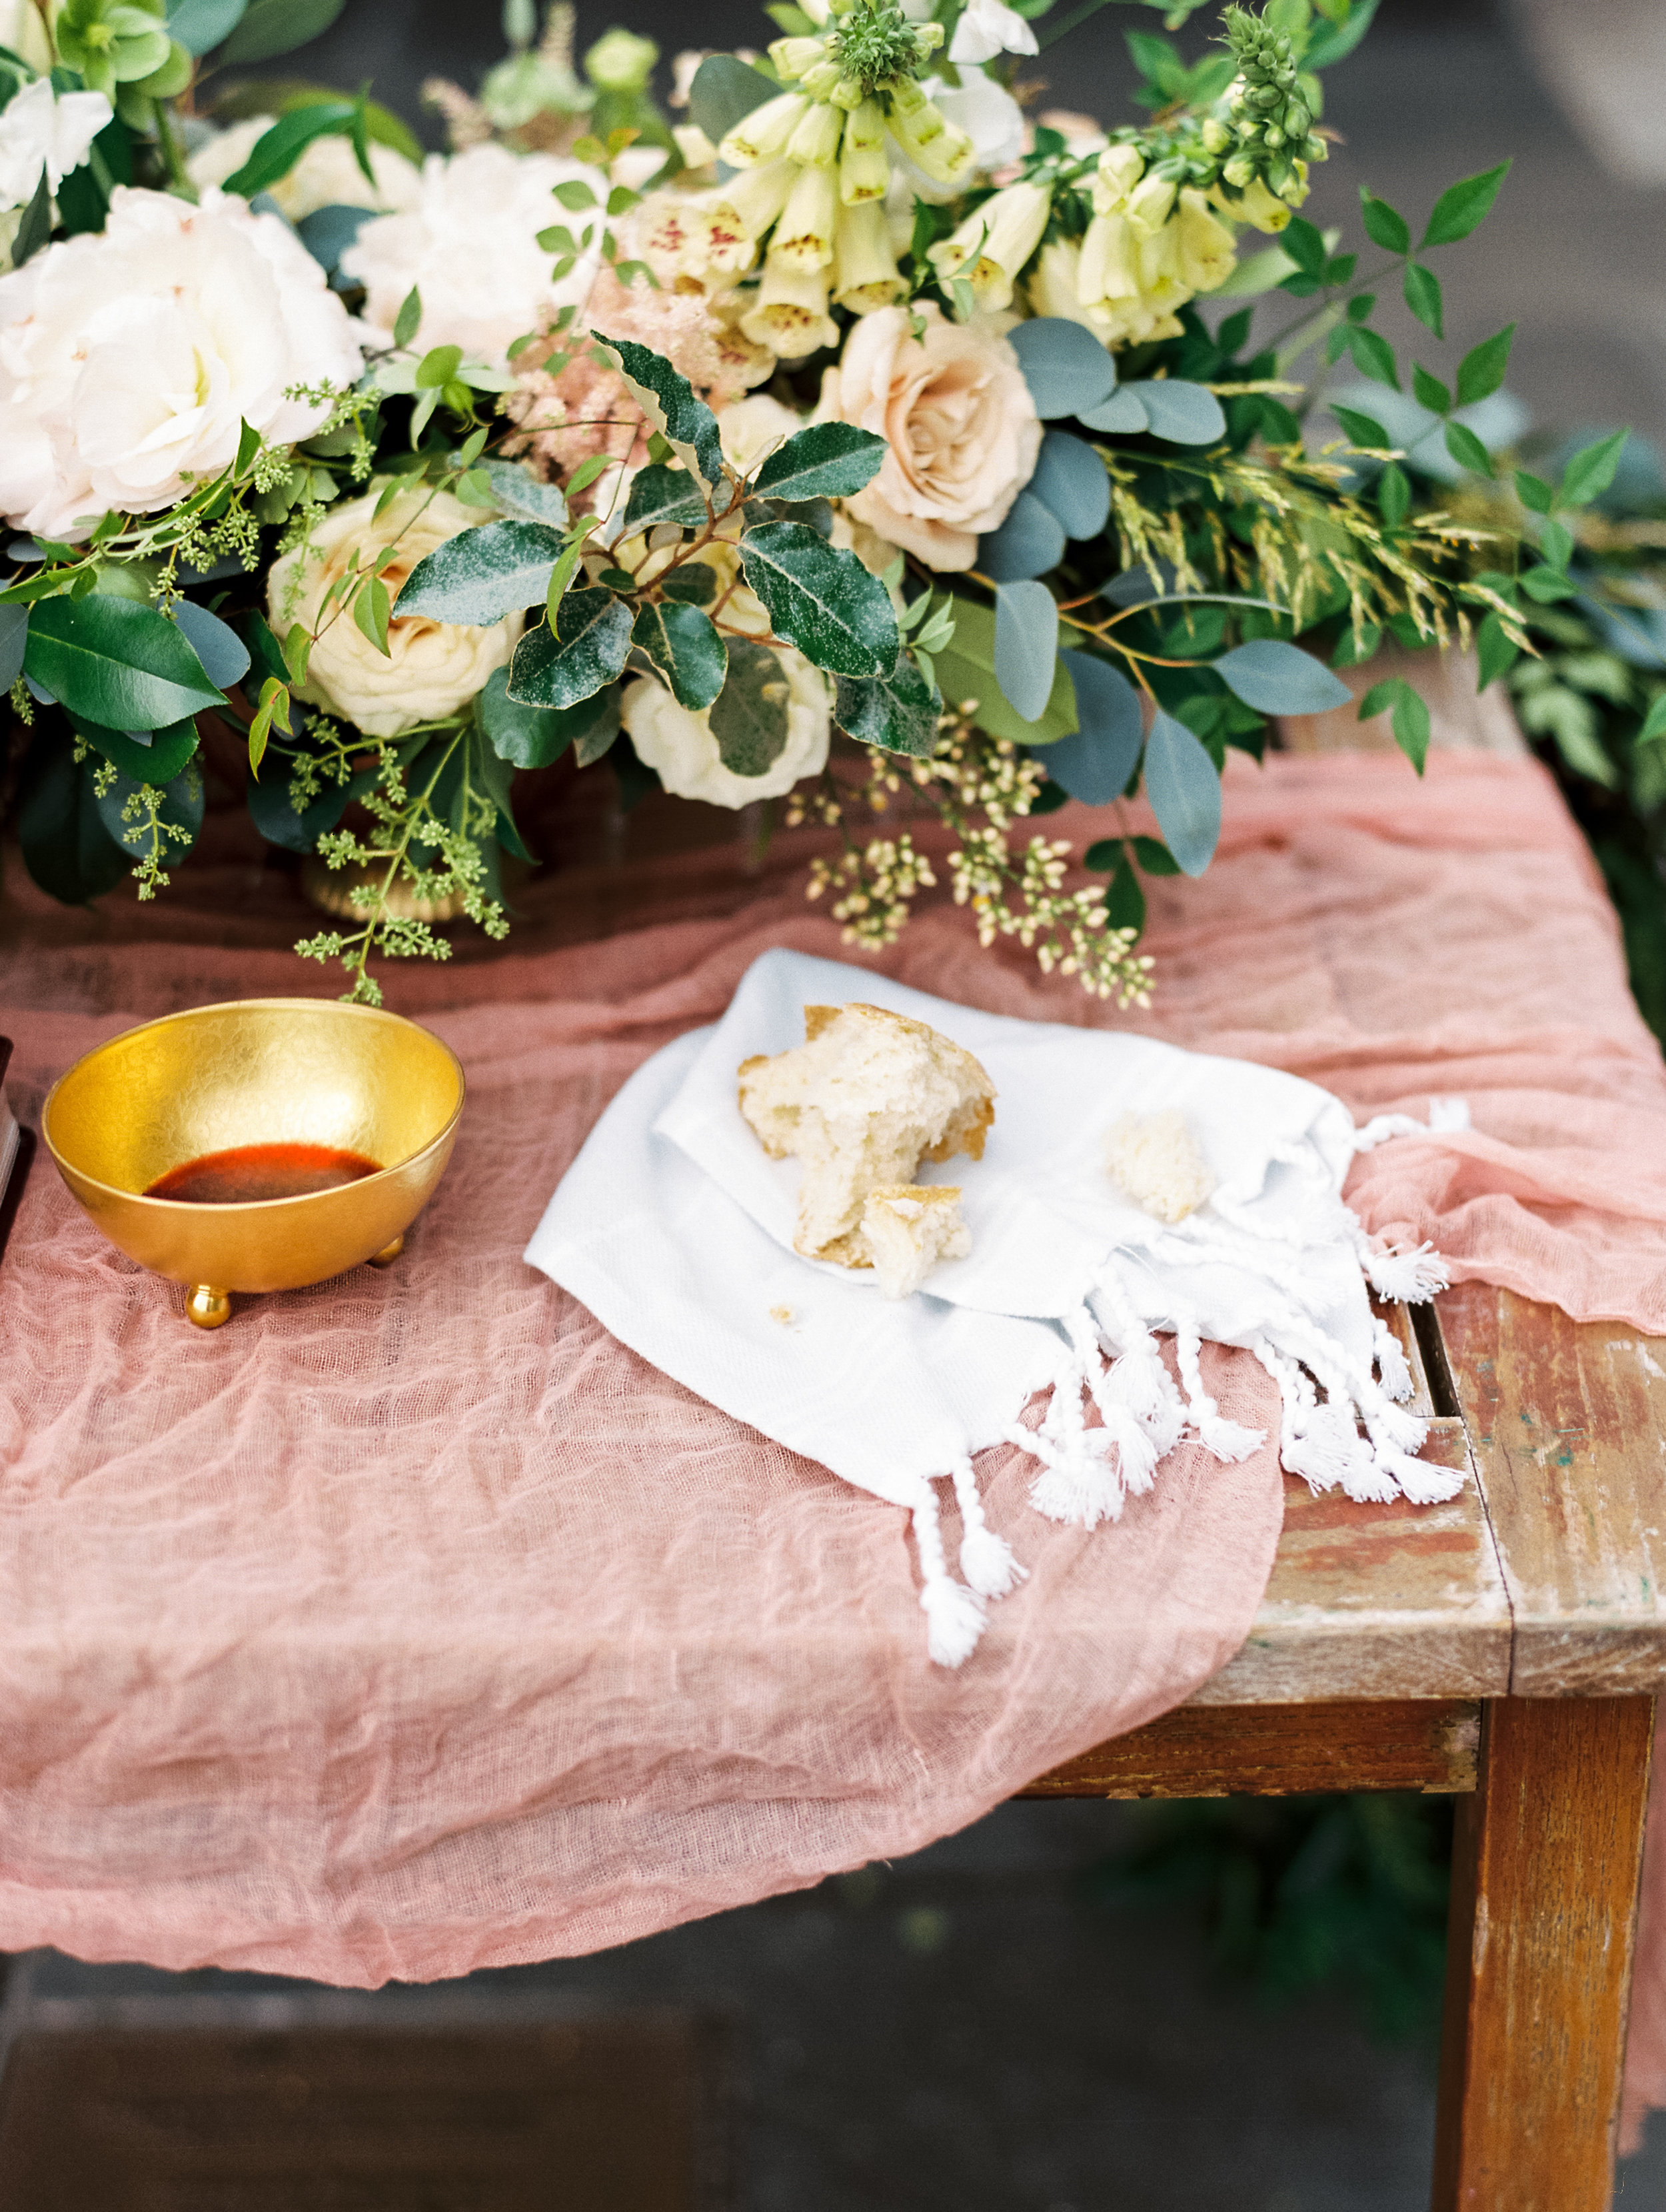 Romantic Dallas Arboretum Wedding - Lindsey Brunk